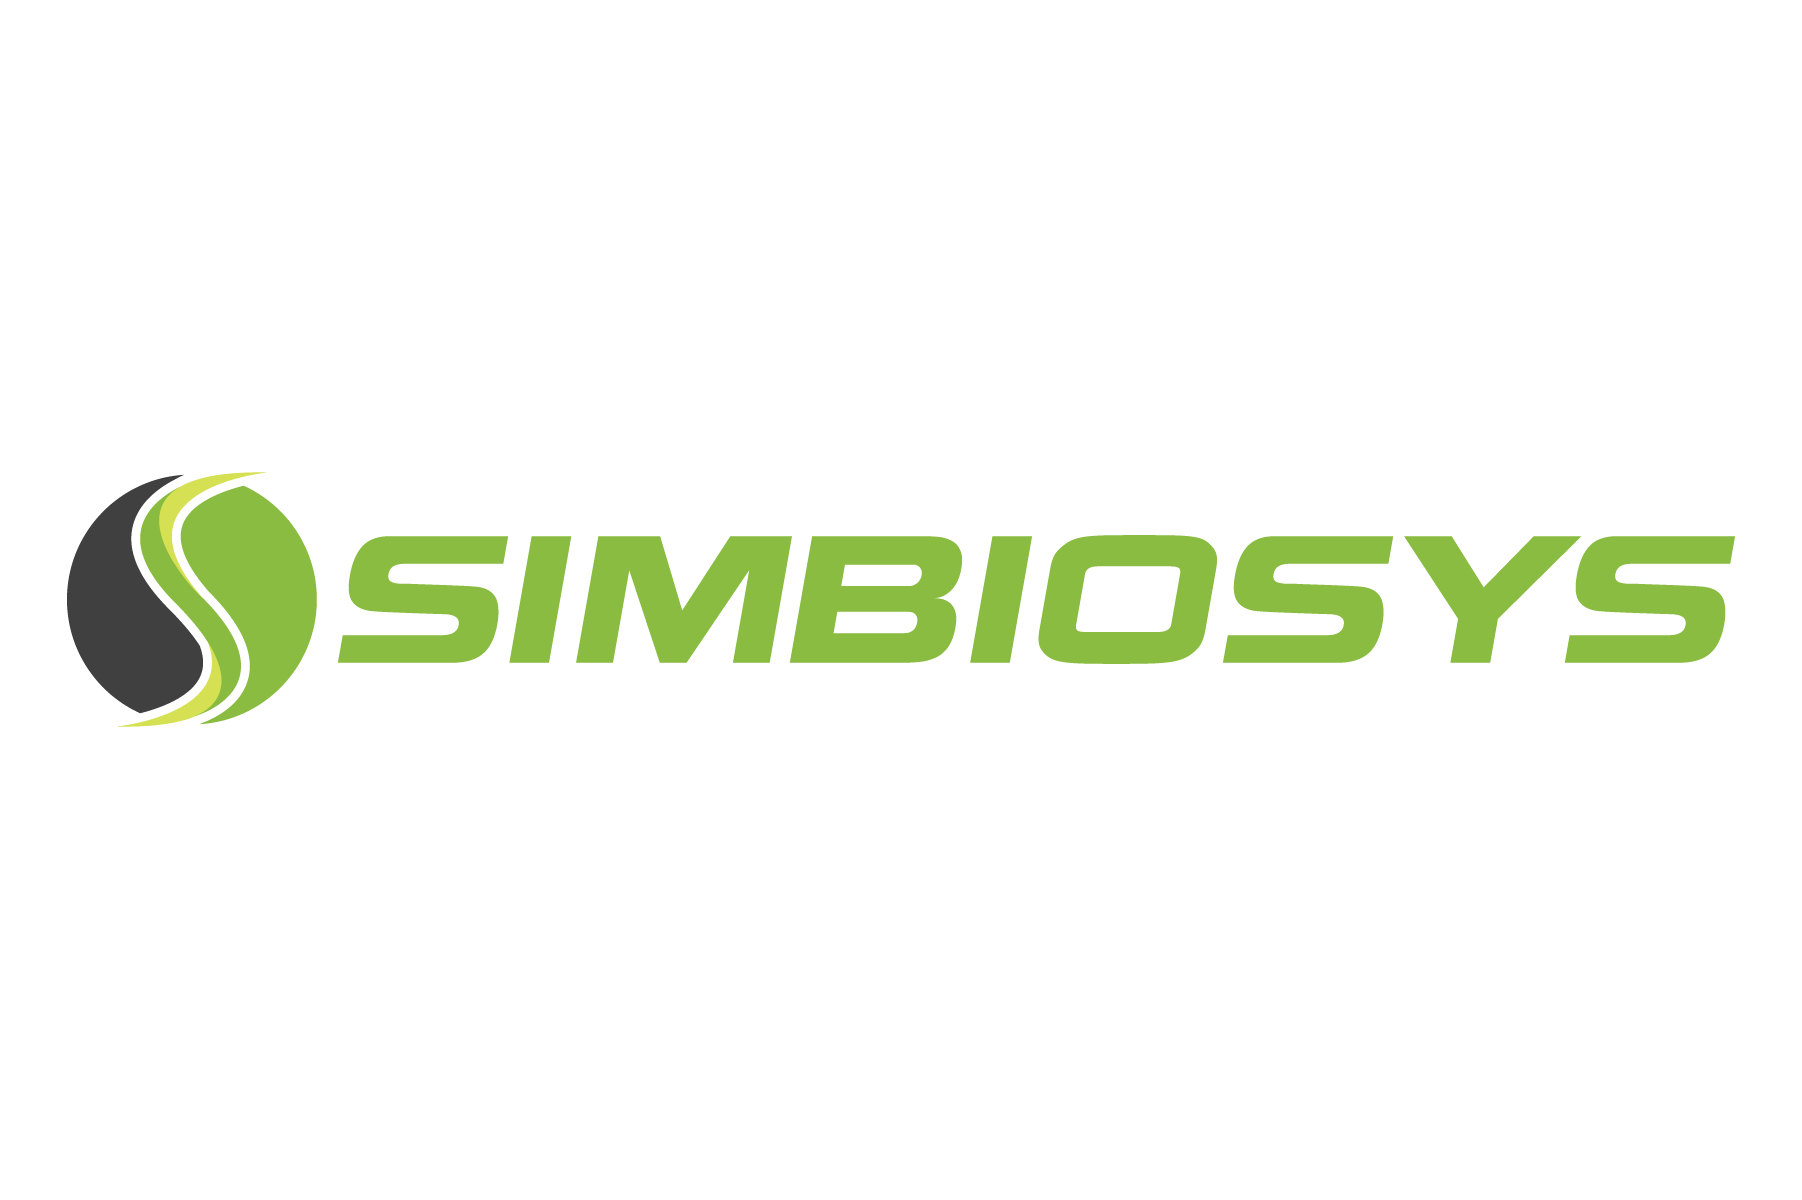 Simbiosys Ltd